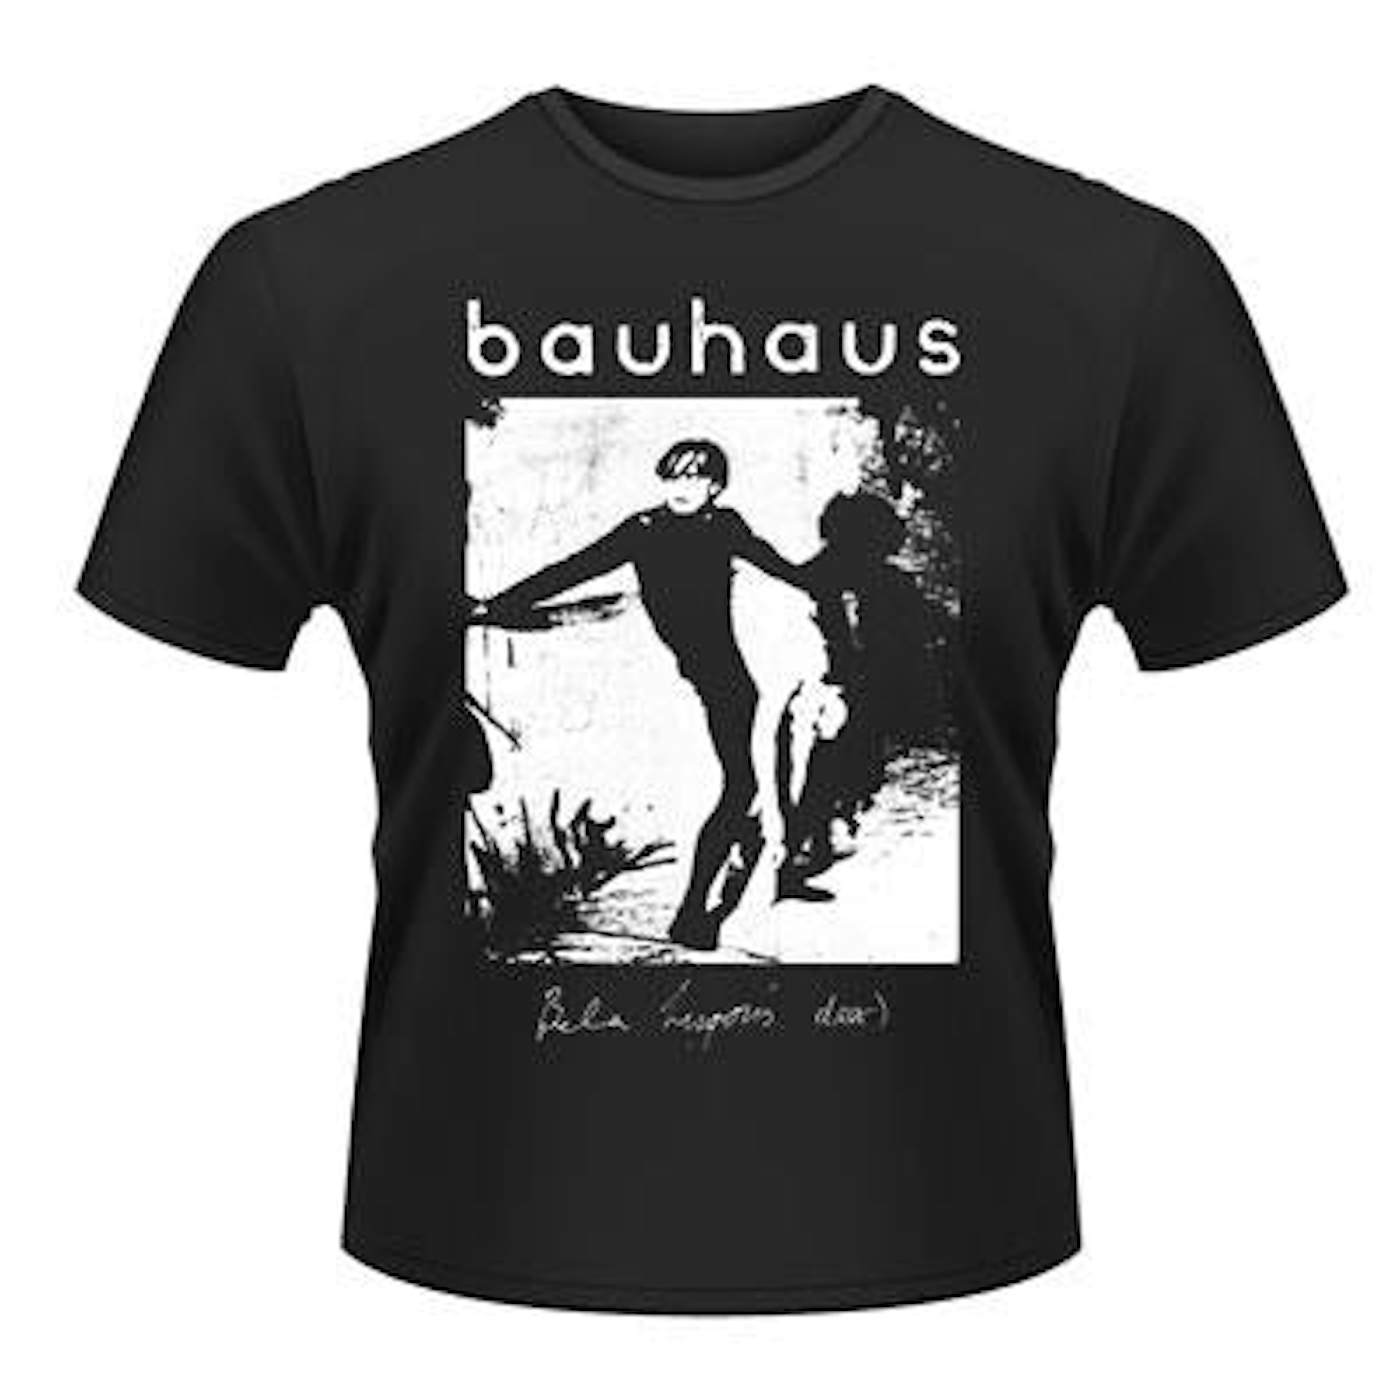 Bauhaus T-Shirt - Bela Lugosi's Dead